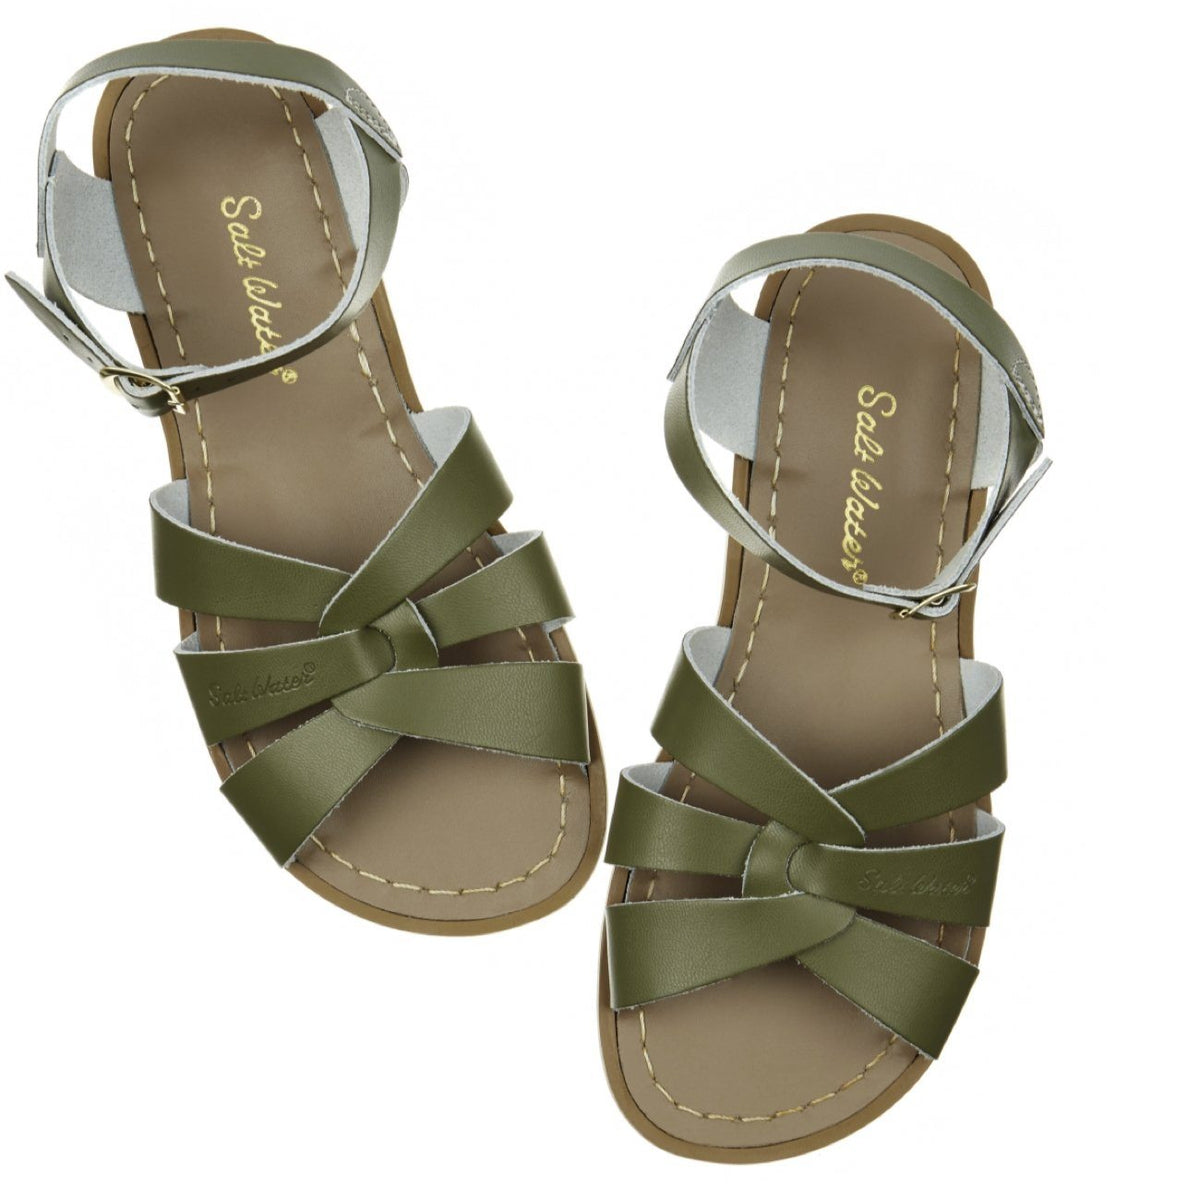 Salt Water Sandals, Original, Adult, Olive Sandals Salt Water Sandals Olive Adult 5 / Aus Womens 7 